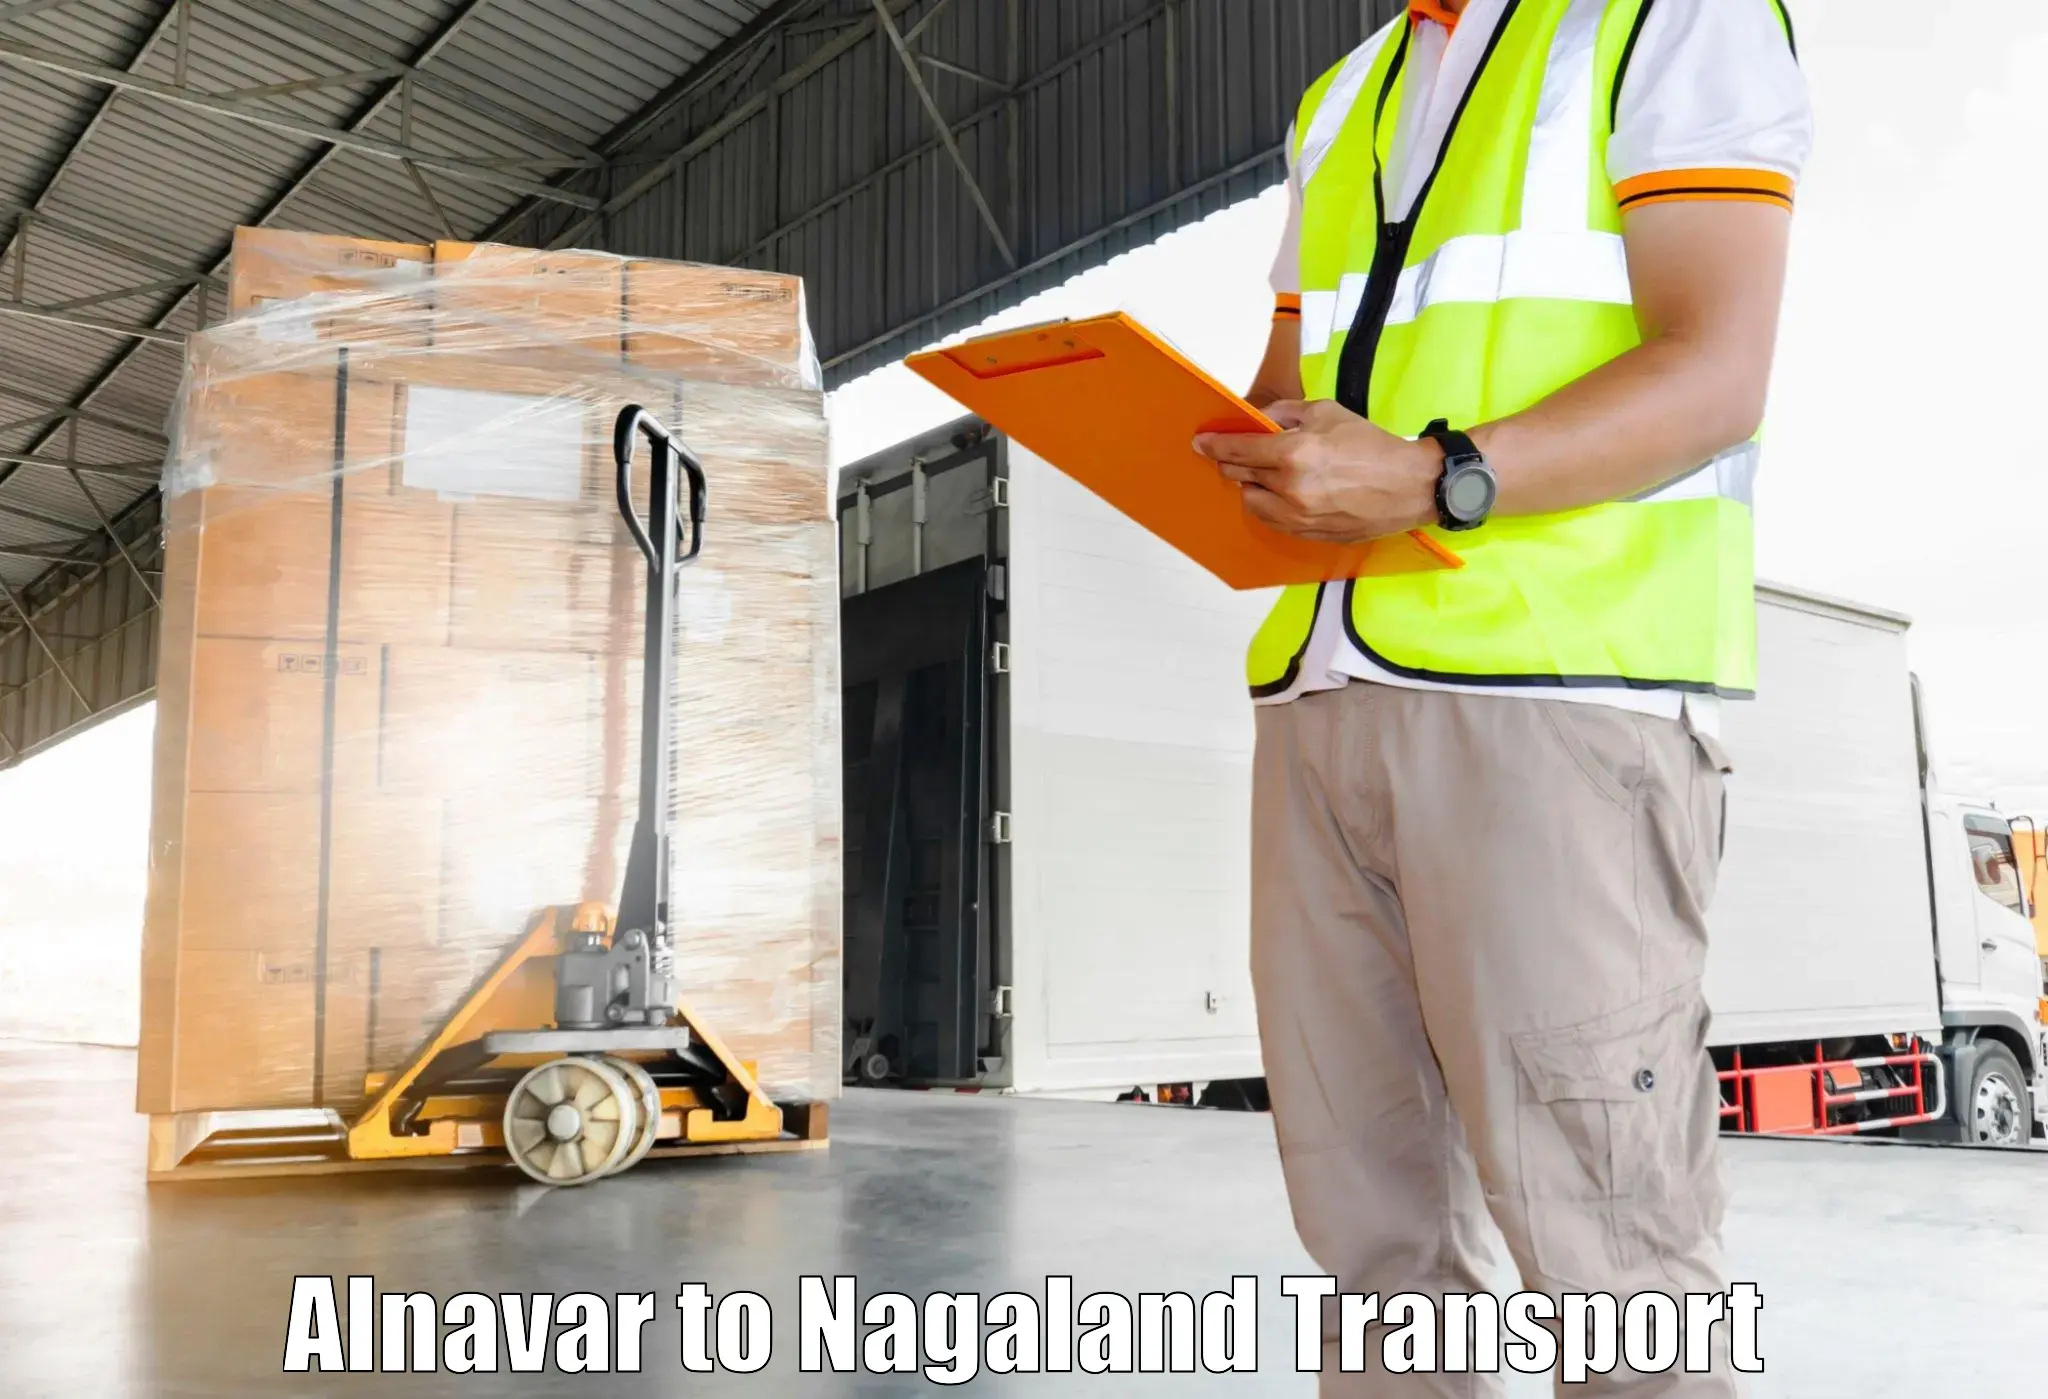 Road transport online services Alnavar to NIT Nagaland